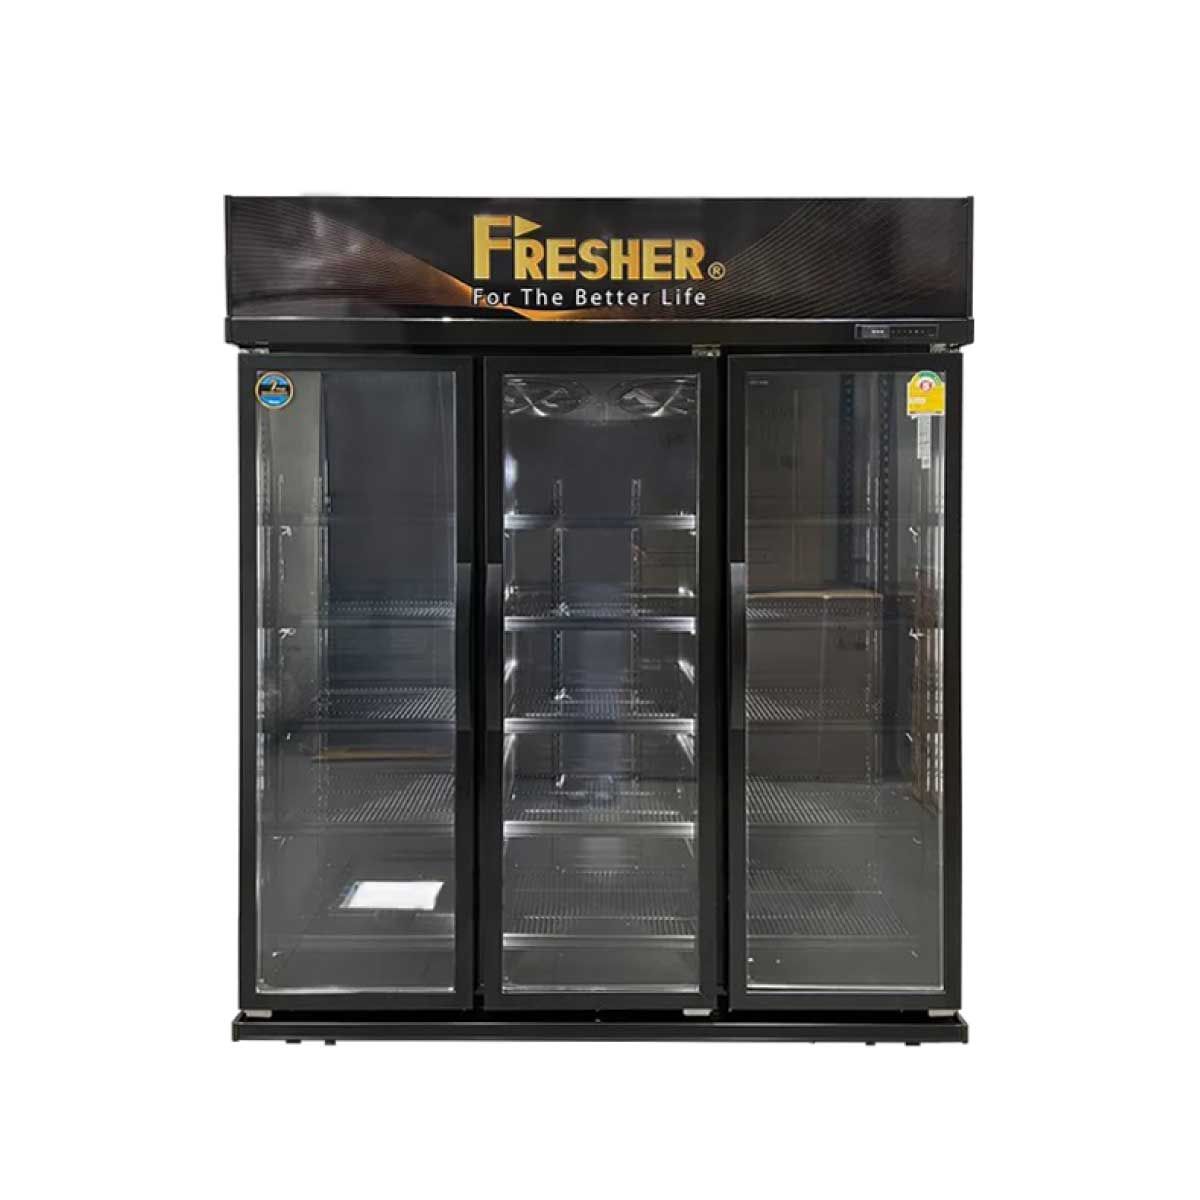 FRESHER ตู้แช่เครื่องดื่ม 3 ประตูขนาด 40.คิว รุ่น FR-3DBV3V9